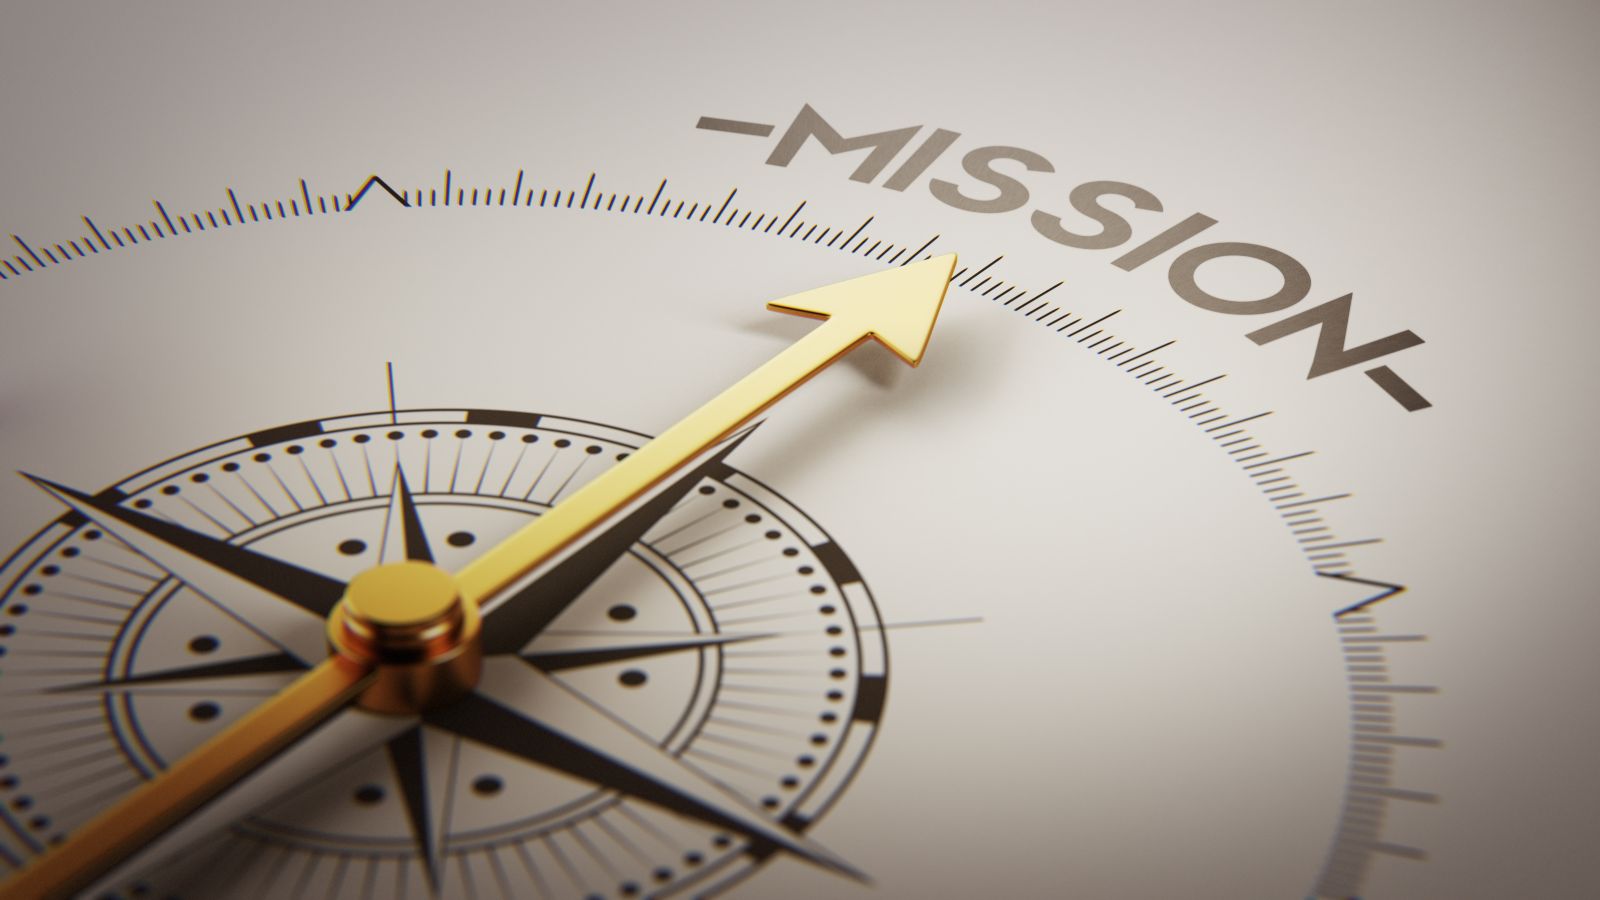 Kompass mit goldener Nadel zeigt auf das Wort Missionen